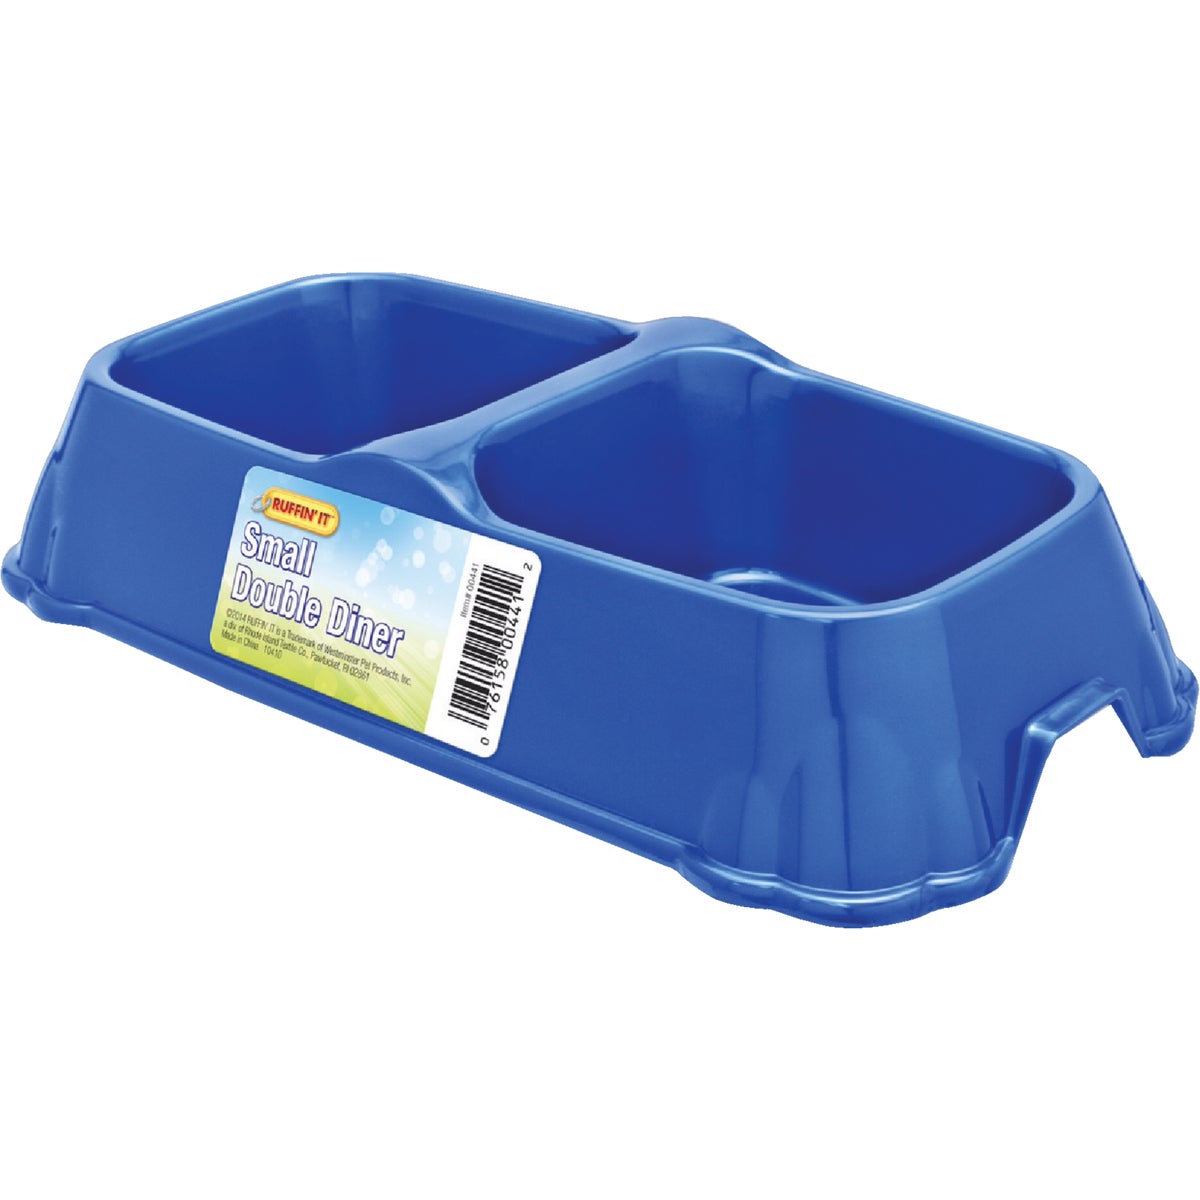 Item 810479, Durable plastic, dishwasher safe pet food bowl.